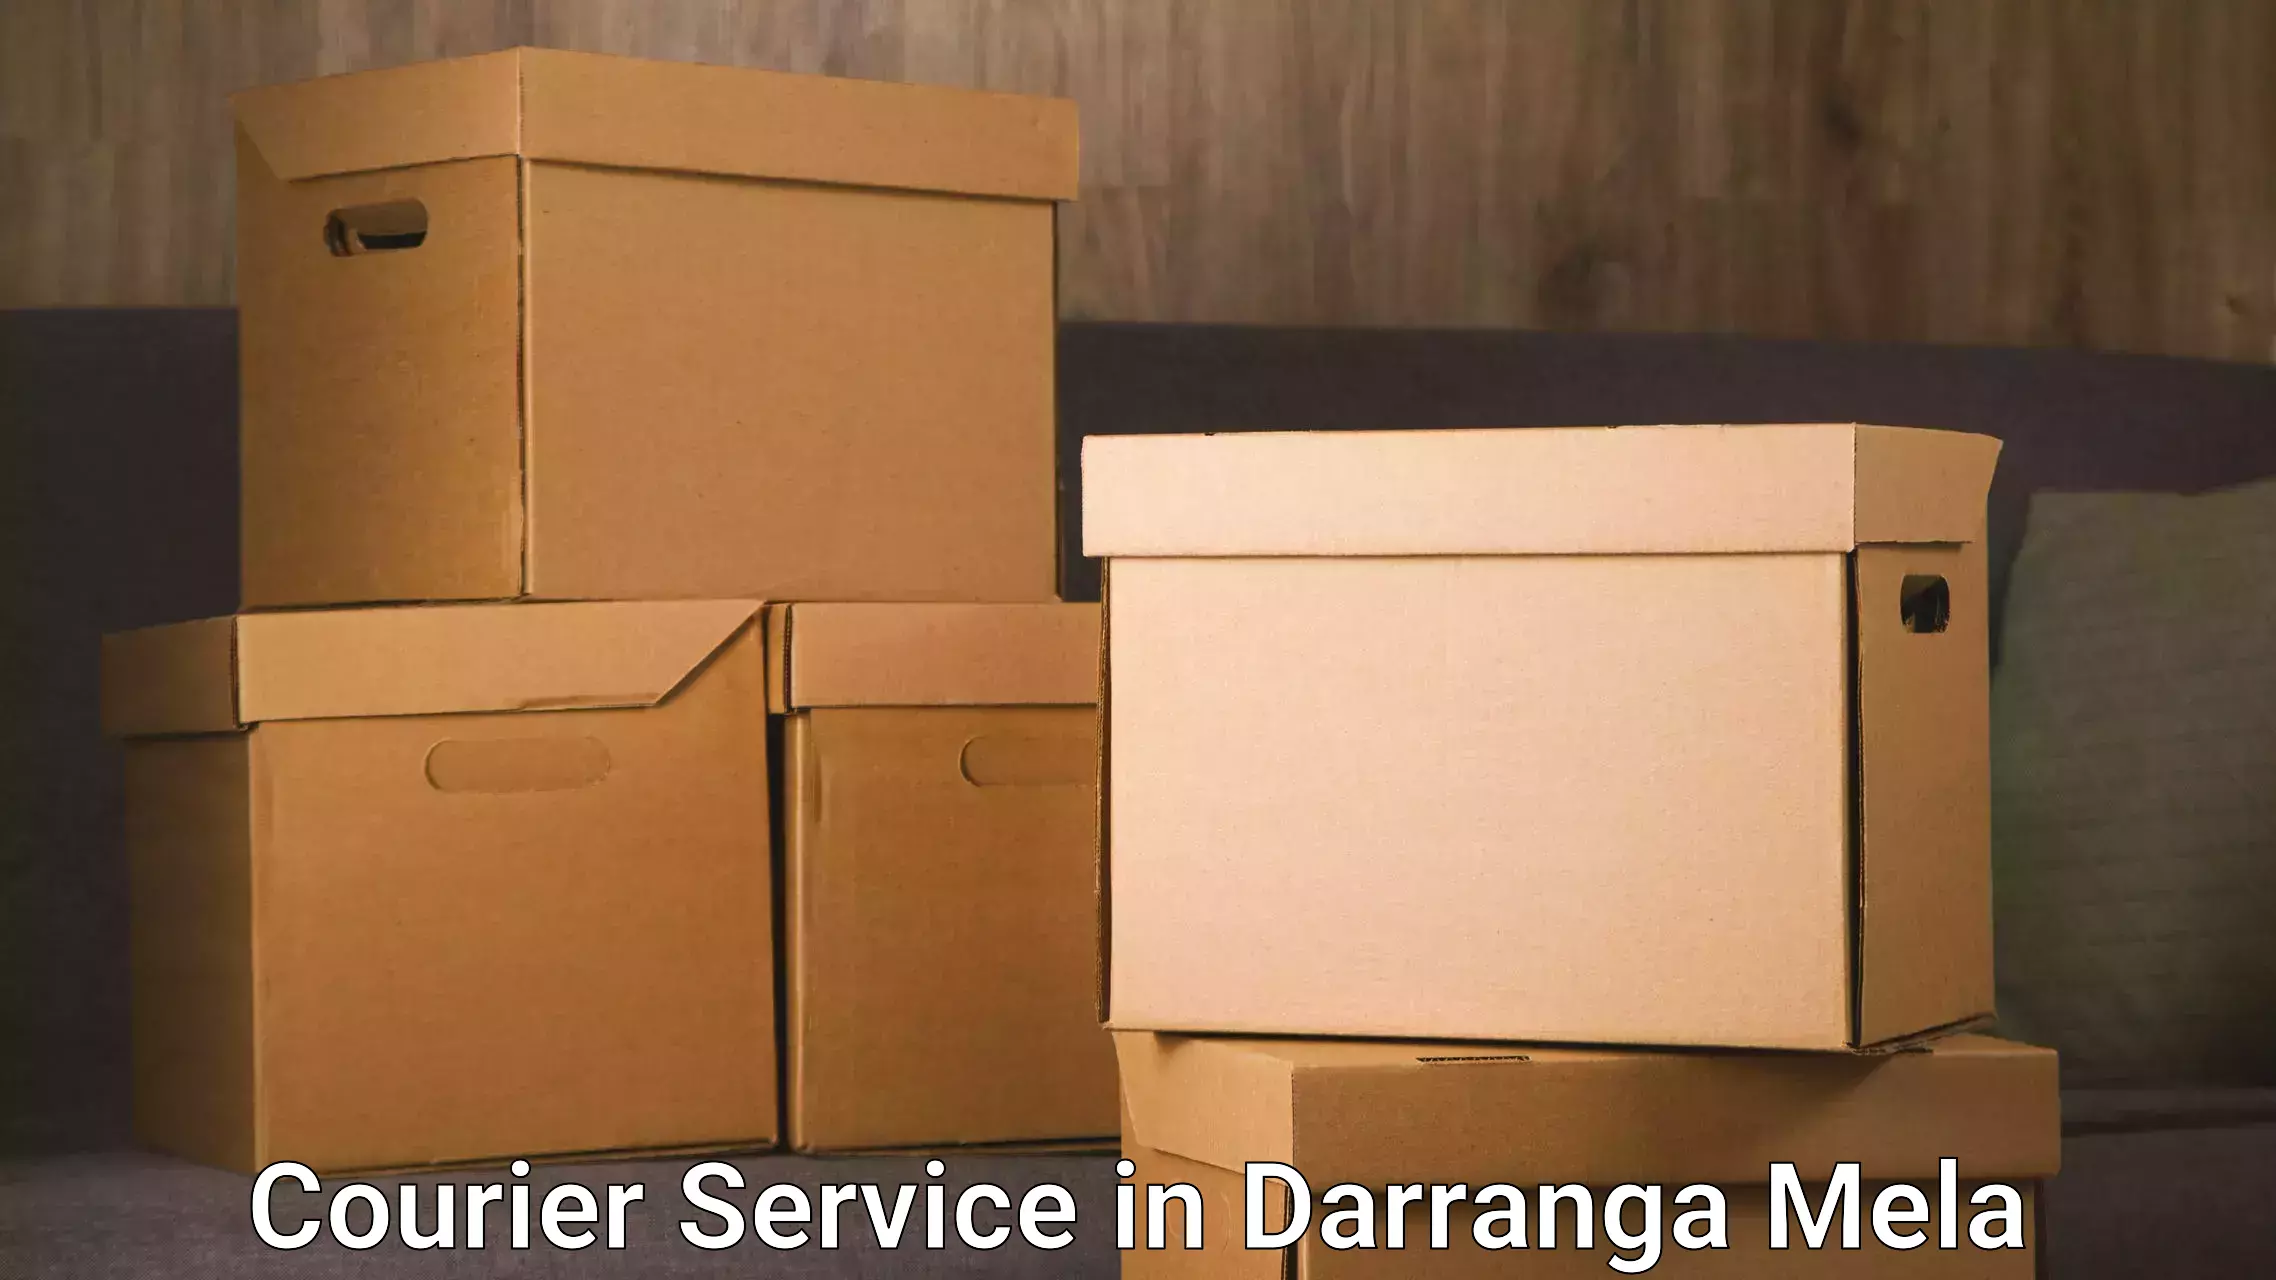 Next-day freight services in Darranga Mela